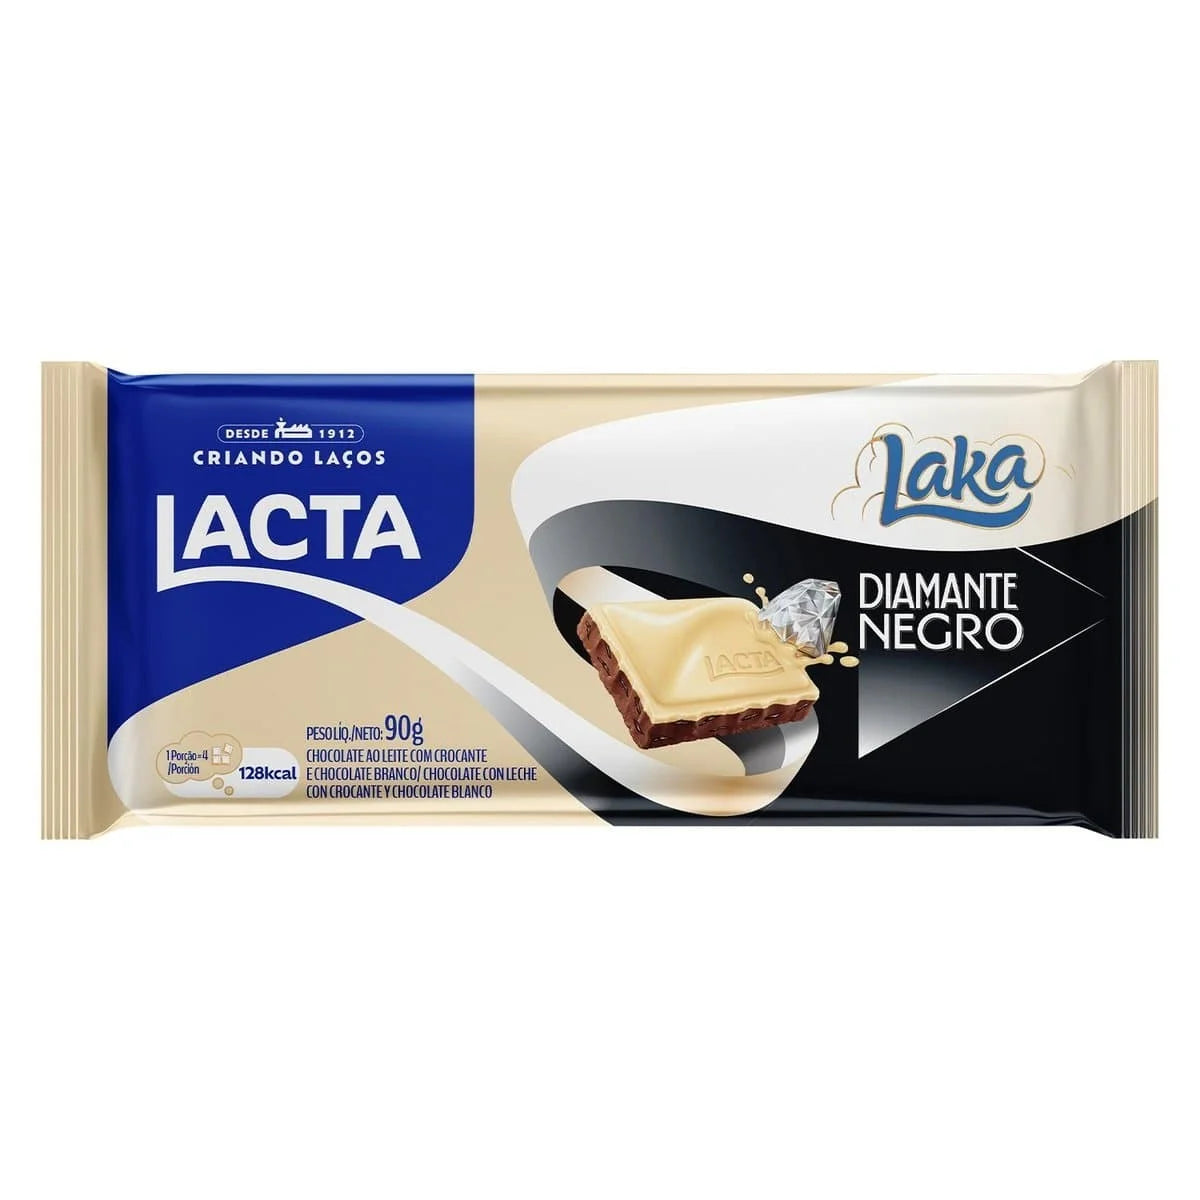 LACTA - Barra de Chocolate Com Crocante "Diamante Negro" e LAKA 80g 